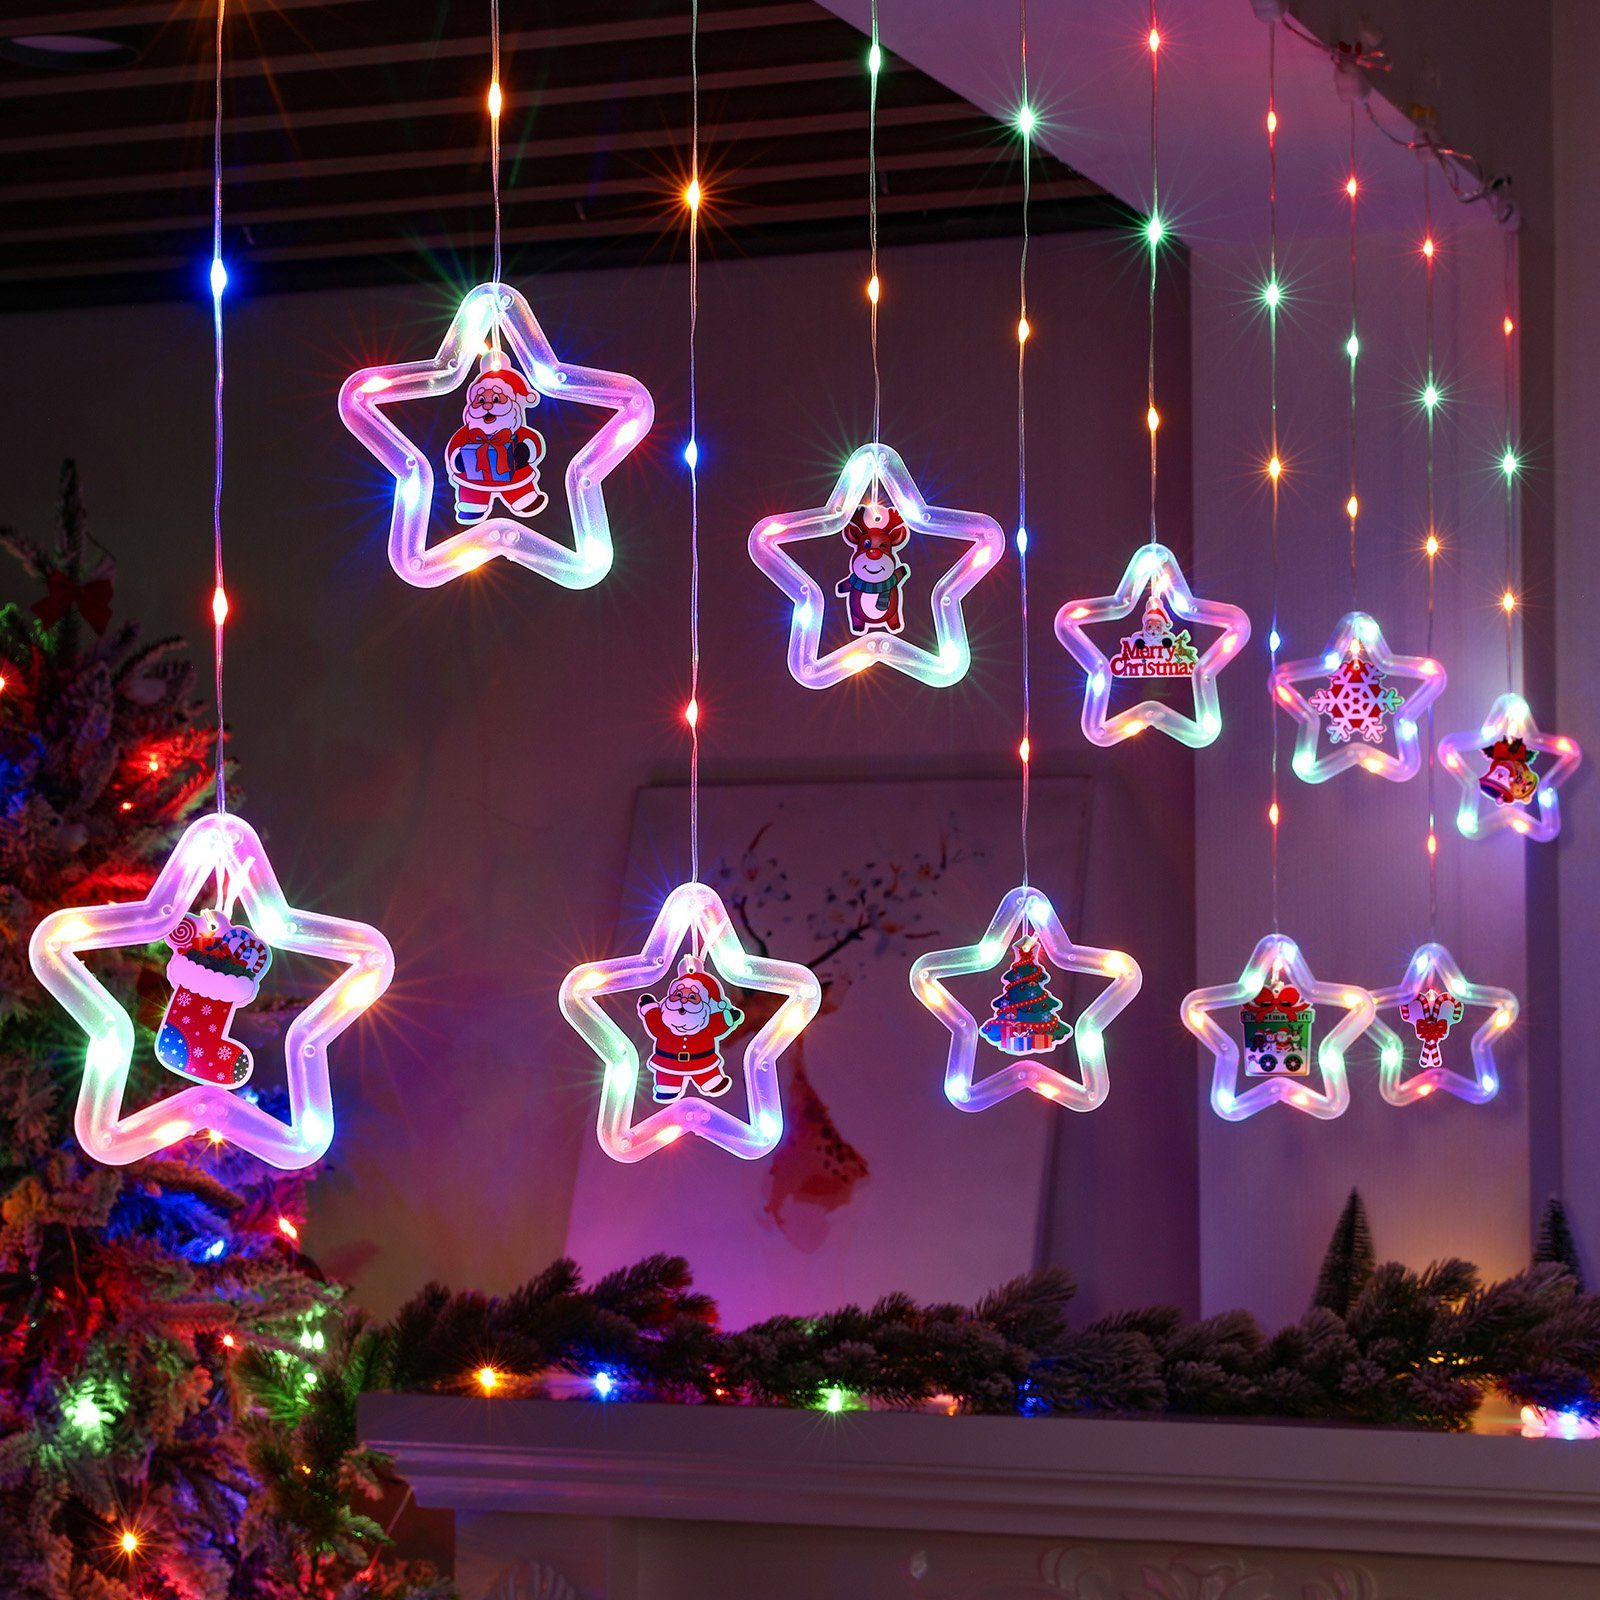 Sunicol LED-Lichtervorhang 3M LED Weihnachten Fensterbeleuchtung mit Timer, Party Garten Deko, 8 Modi LED Lichterkette mit Fernsteuerung, Warmweiß/RGB, Batterien/USB Mehrfarbig